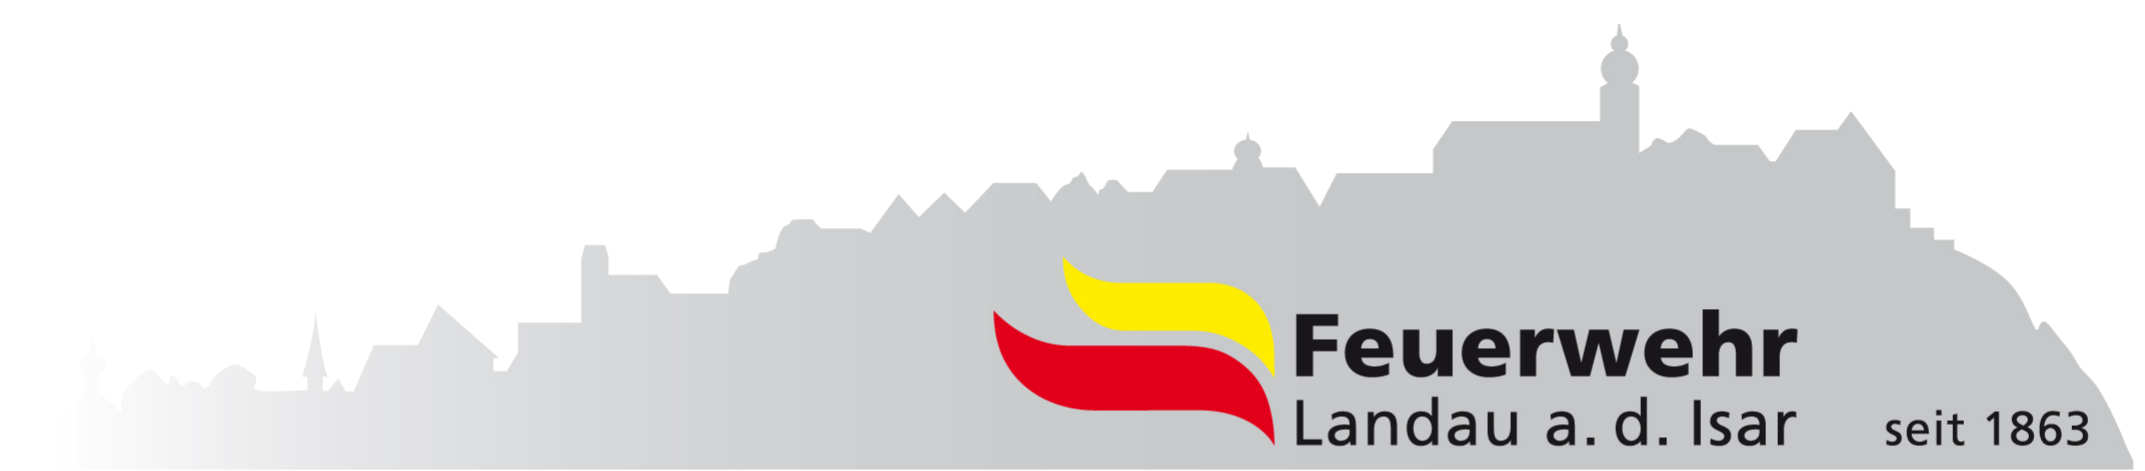 Feuerwehr Landau a.d.Isar Logo